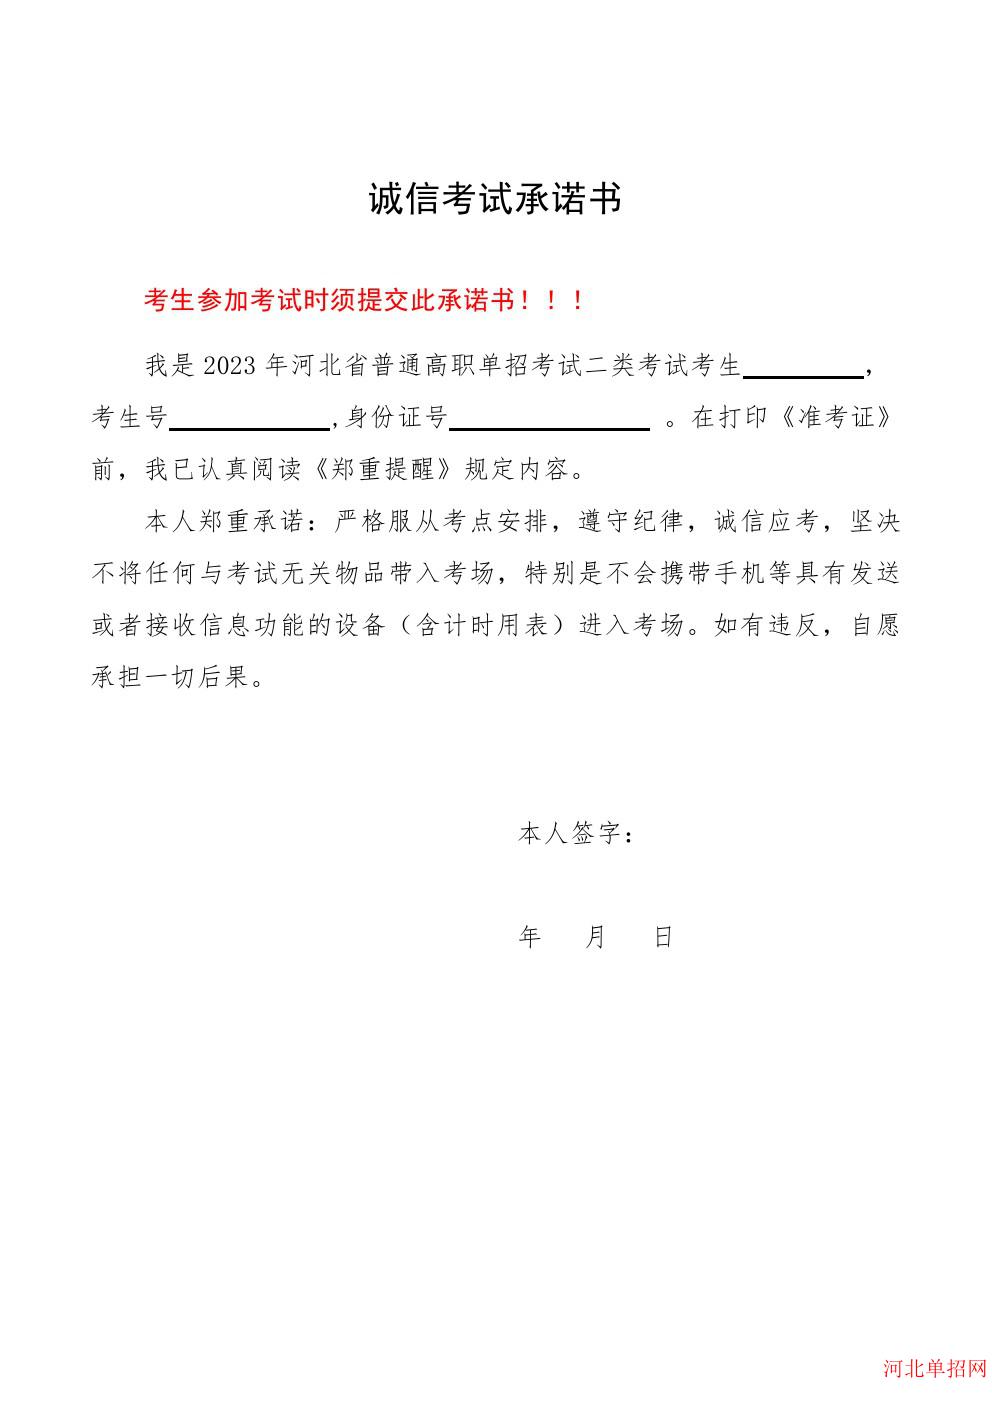 2023年河北省高职单招考试诚信考试承诺书 图2